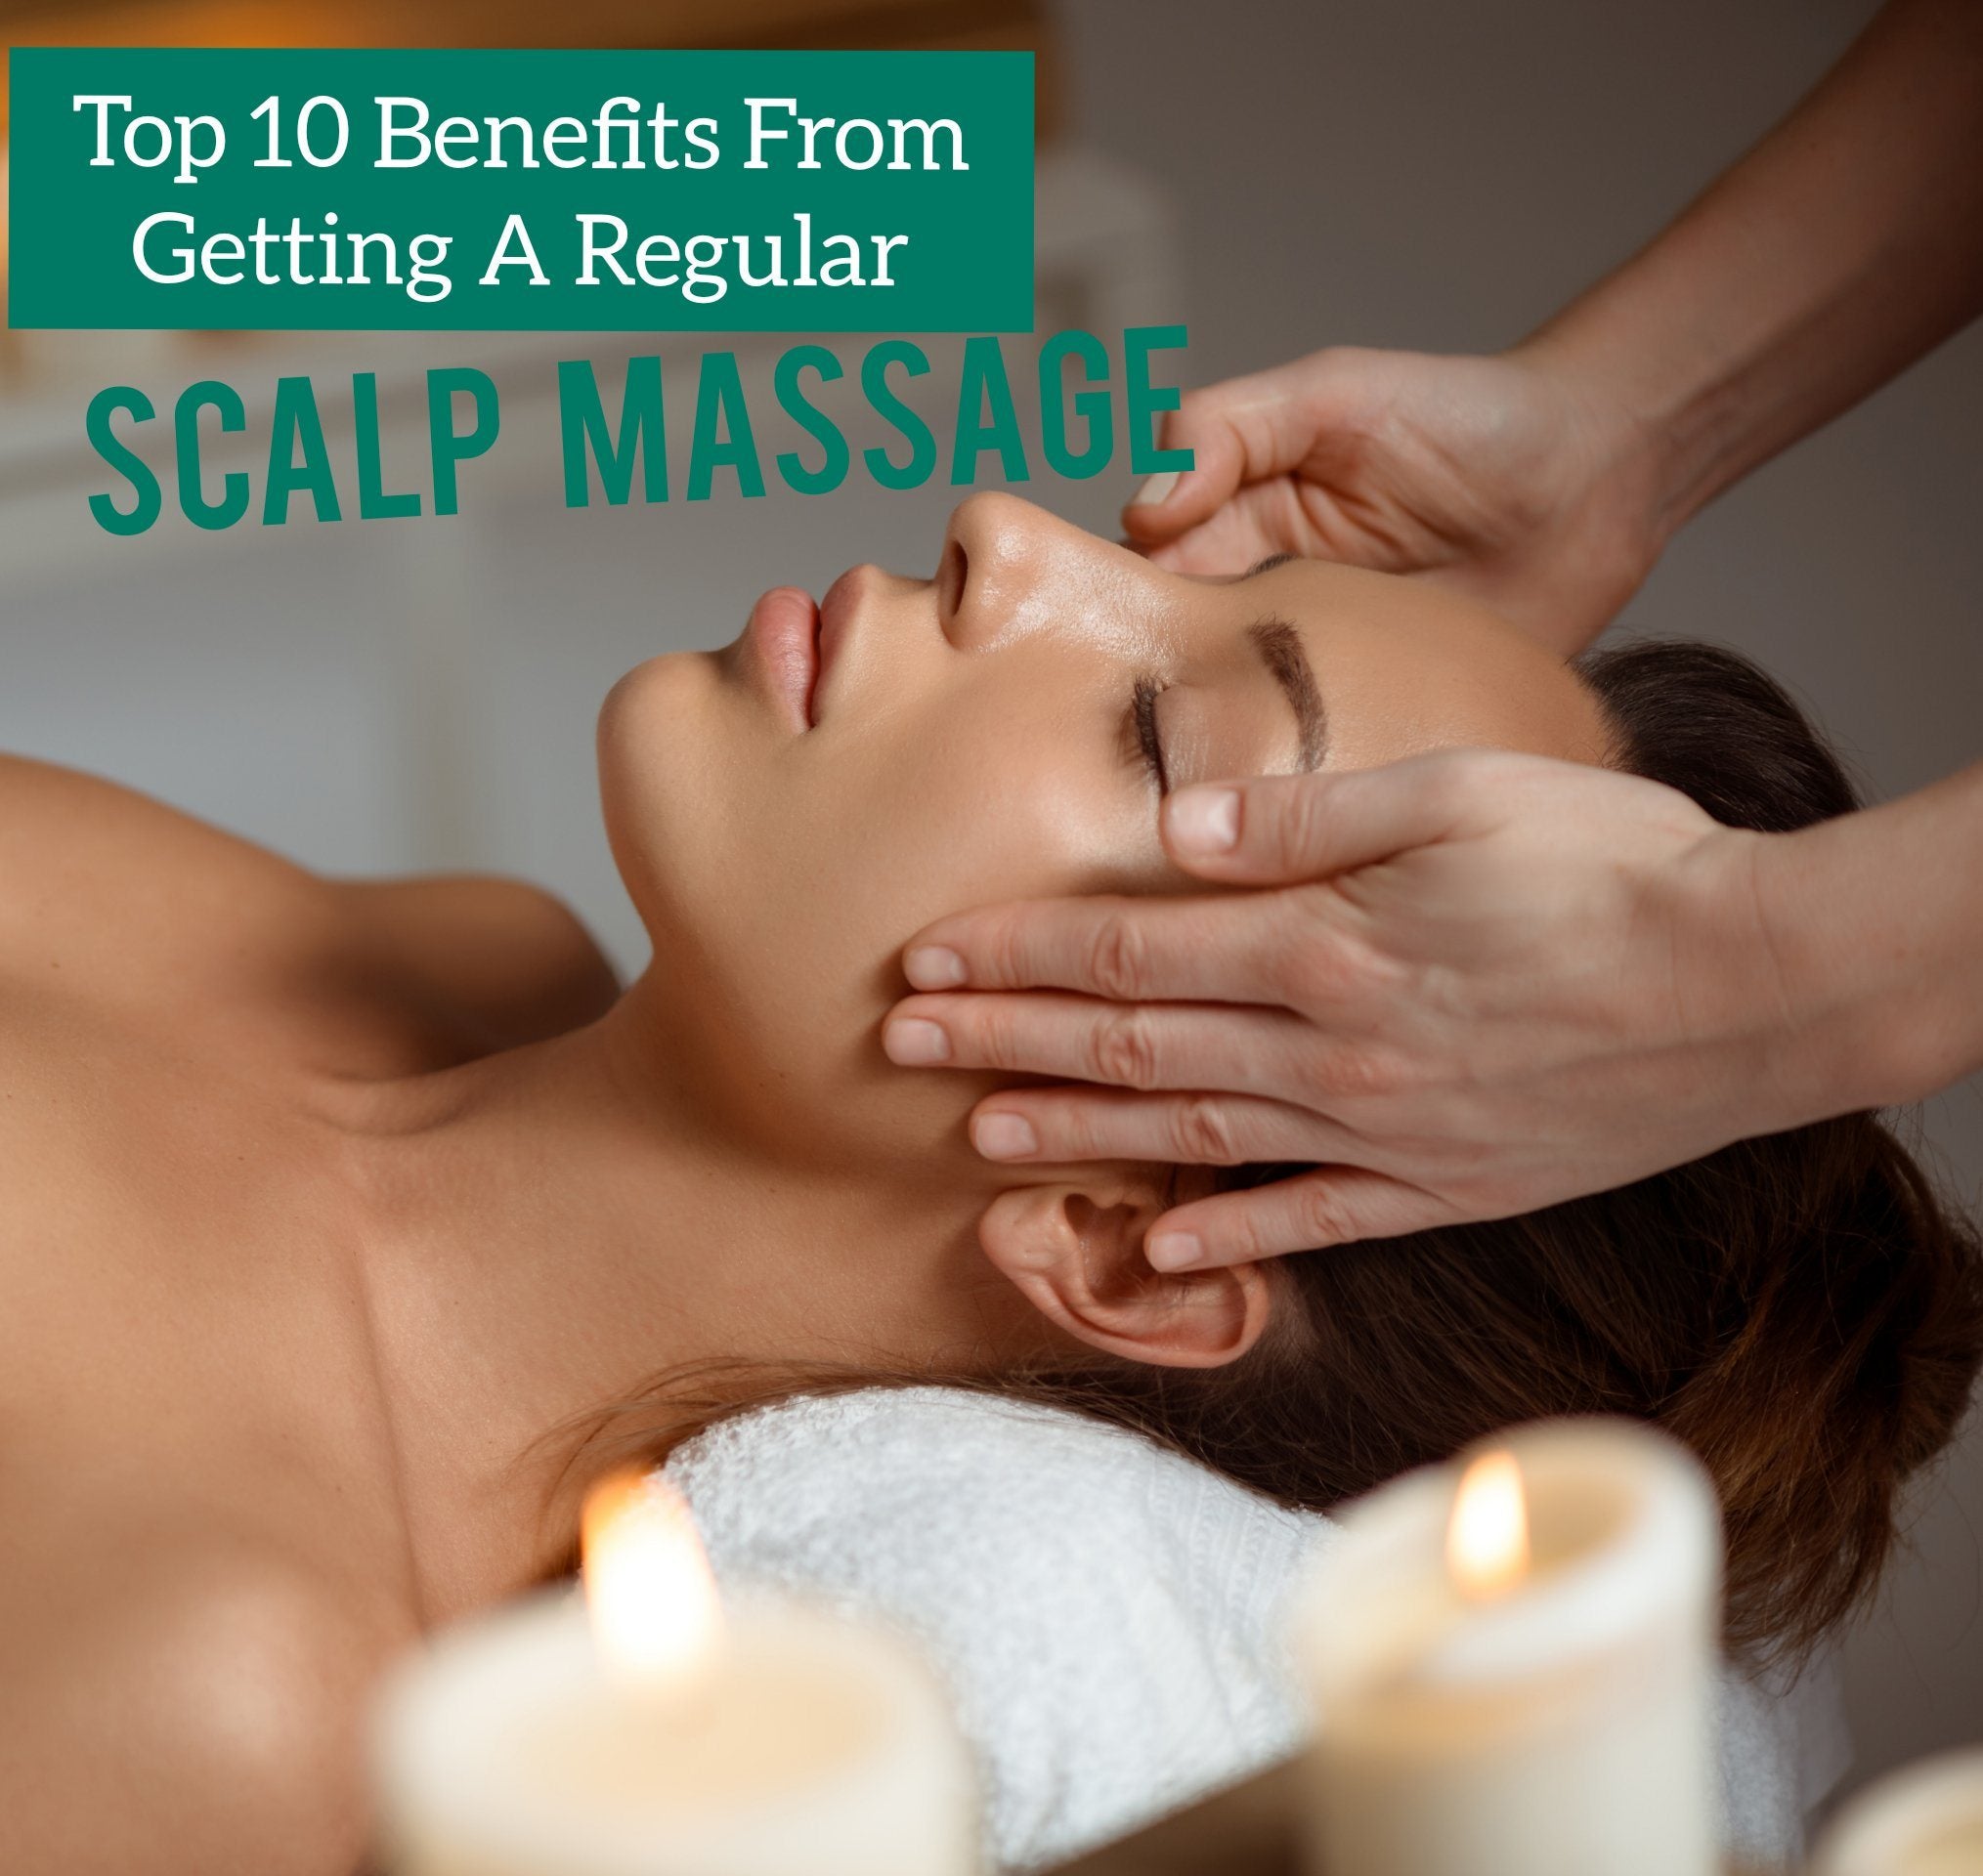 https://www.twoherbs.com.sg/cdn/shop/articles/top-10-benefits-from-getting-a-regular-scalp-massage-835011_2029x.jpg?v=1607620416